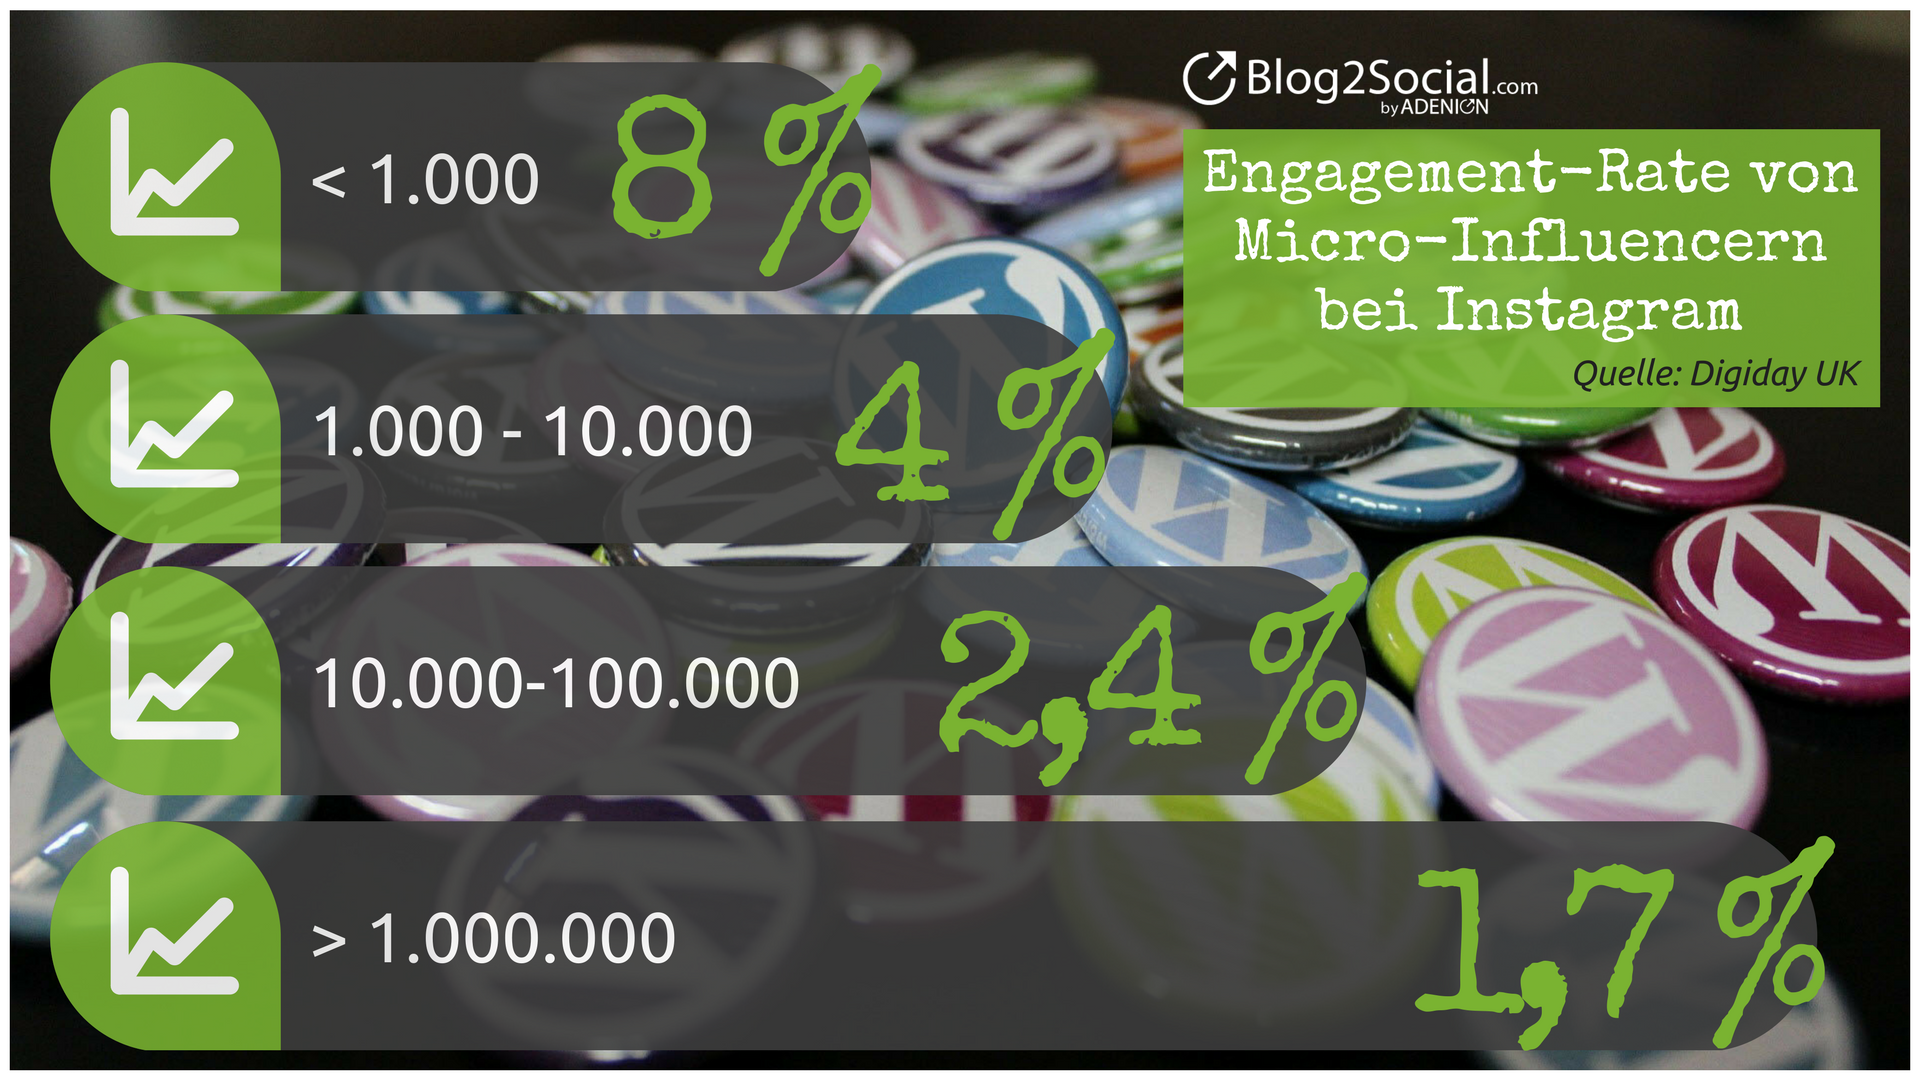 Engagement-Rate von Micro-Influencern bei Instagram